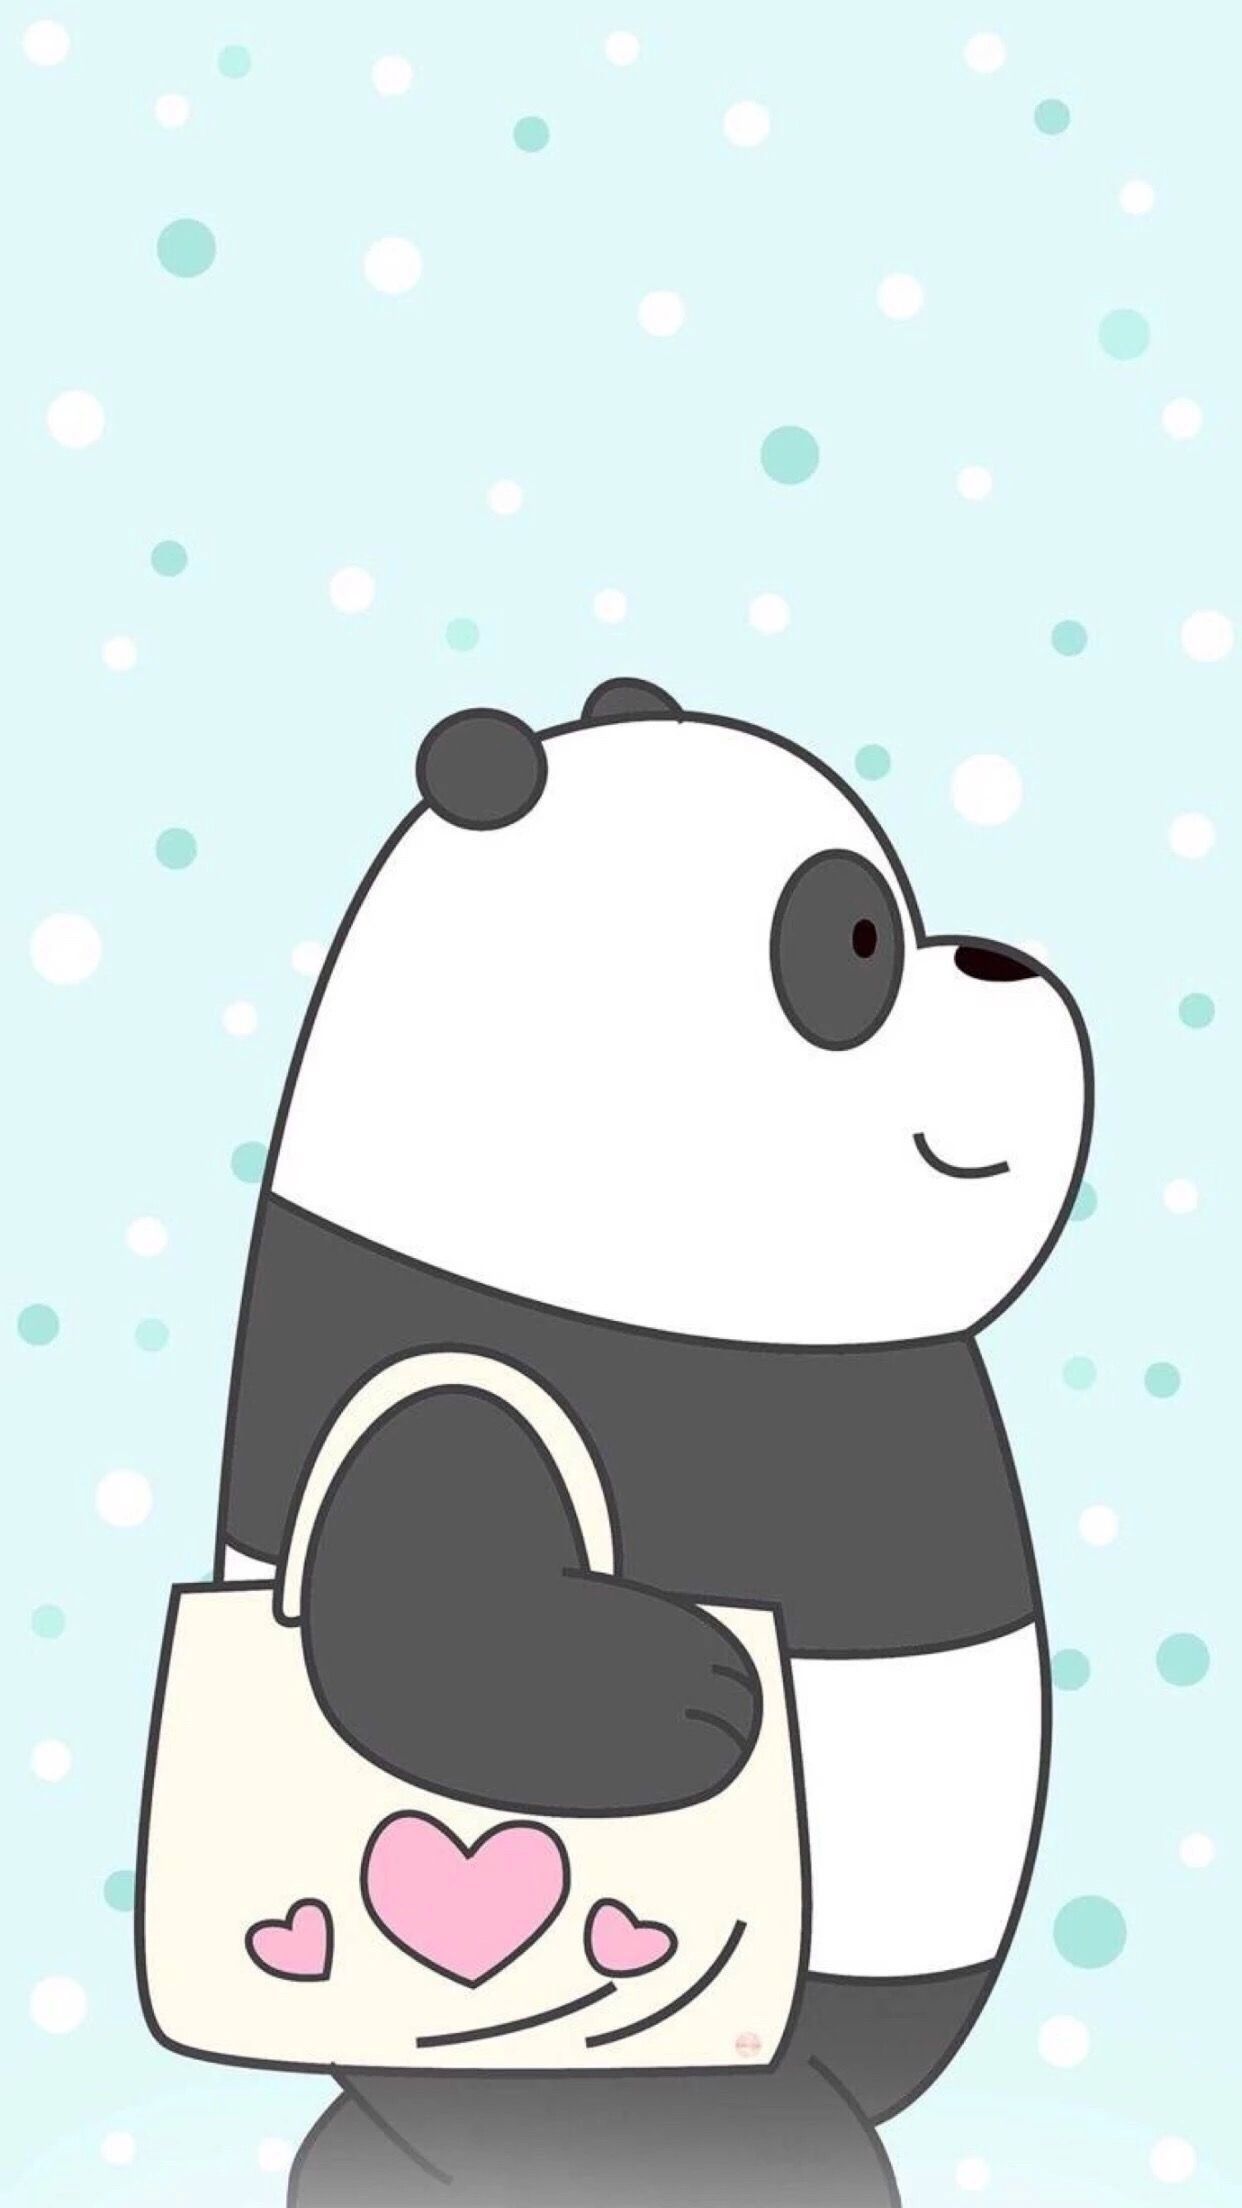 Panda Cute Wallpaper